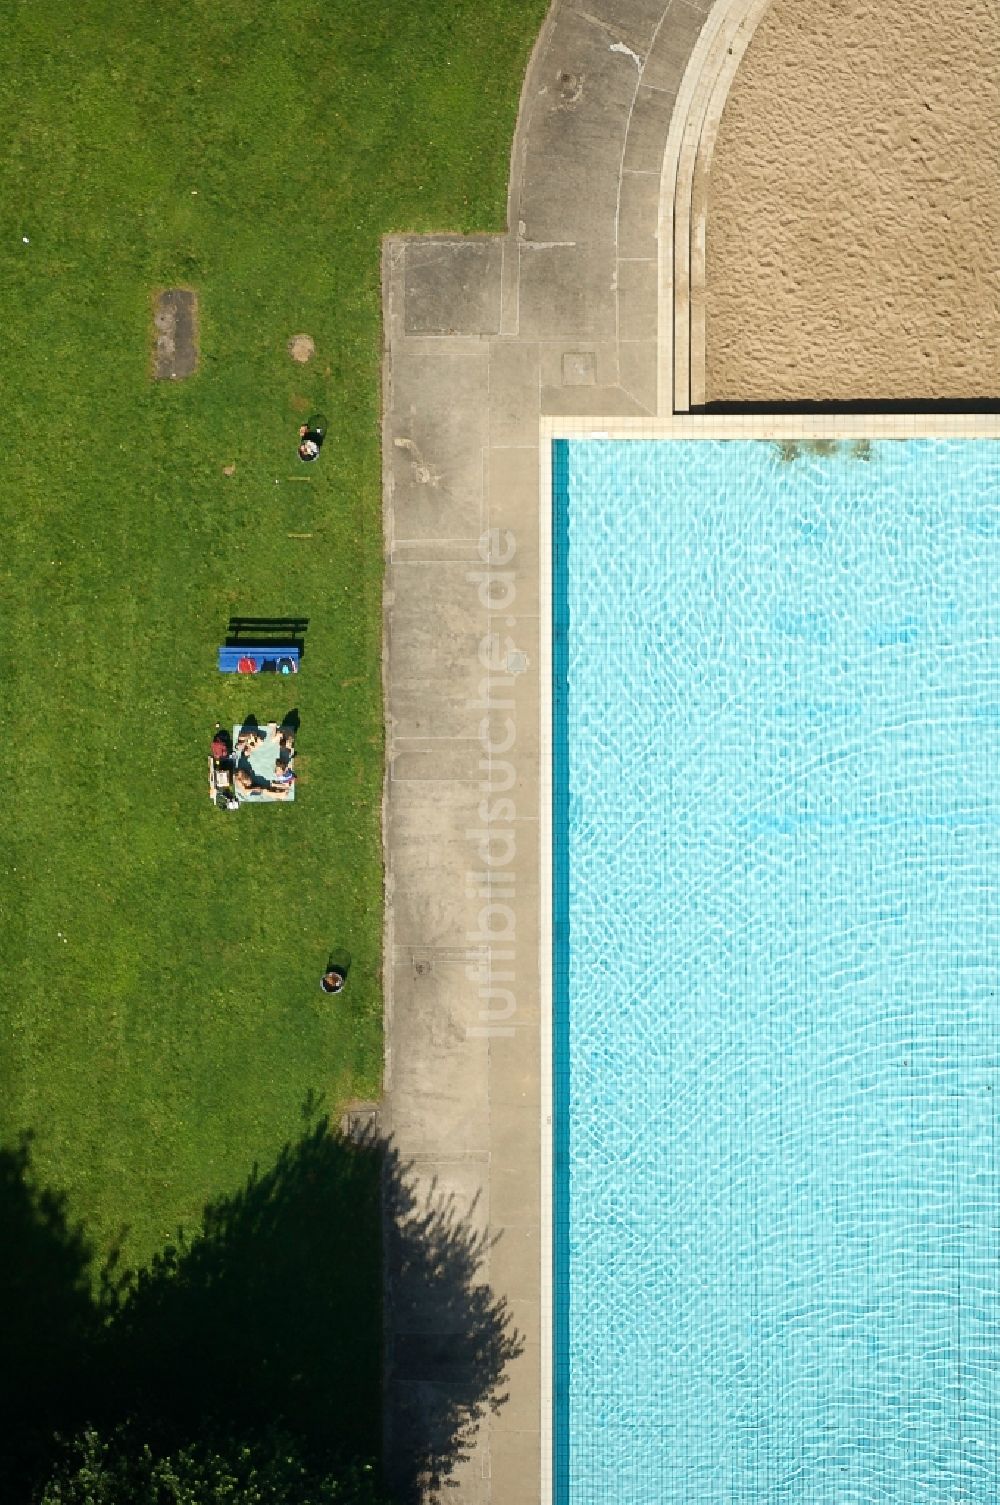 Köln aus der Vogelperspektive: Schwimmbecken des Freibades Stadionbad in Köln im Bundesland Nordrhein-Westfalen, Deutschland